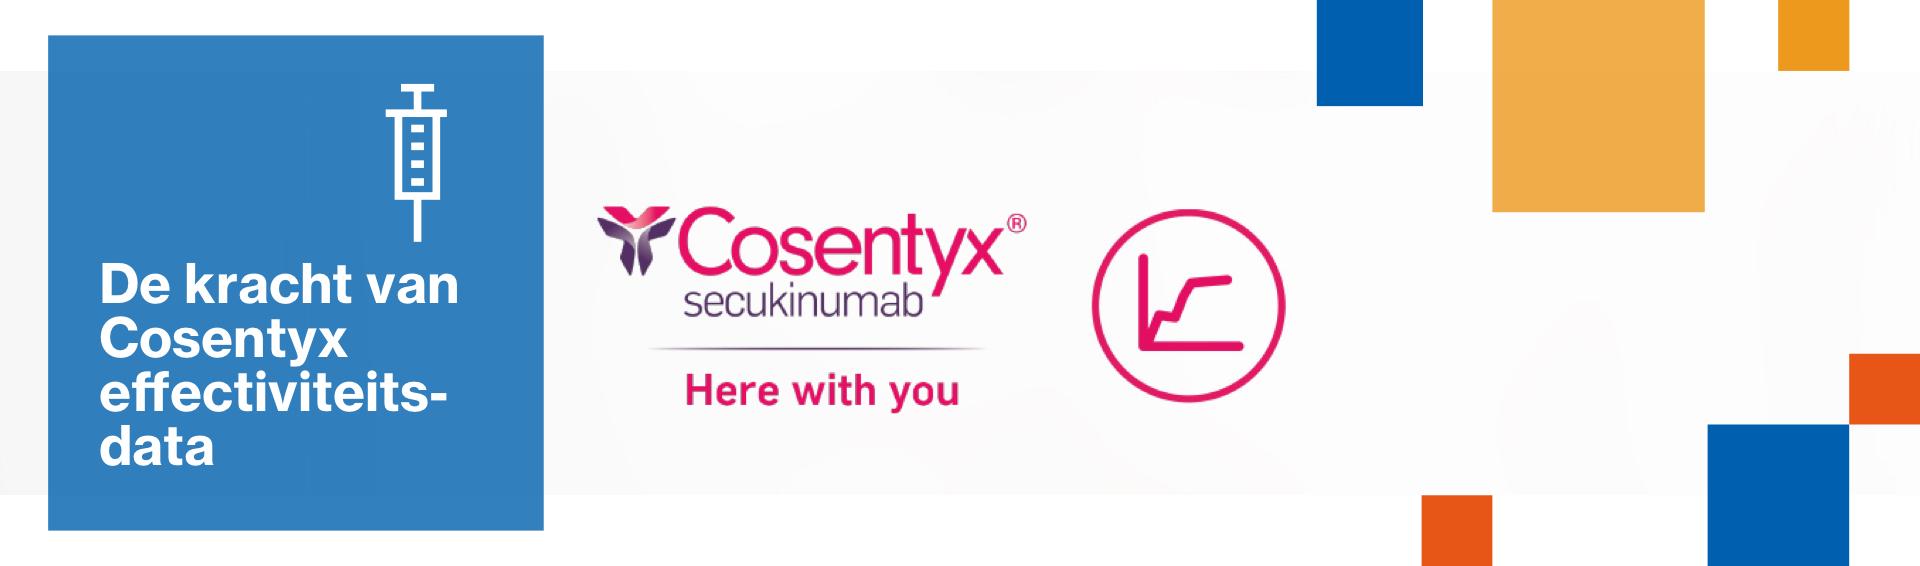 Banner 'De kracht van Cosentyx'